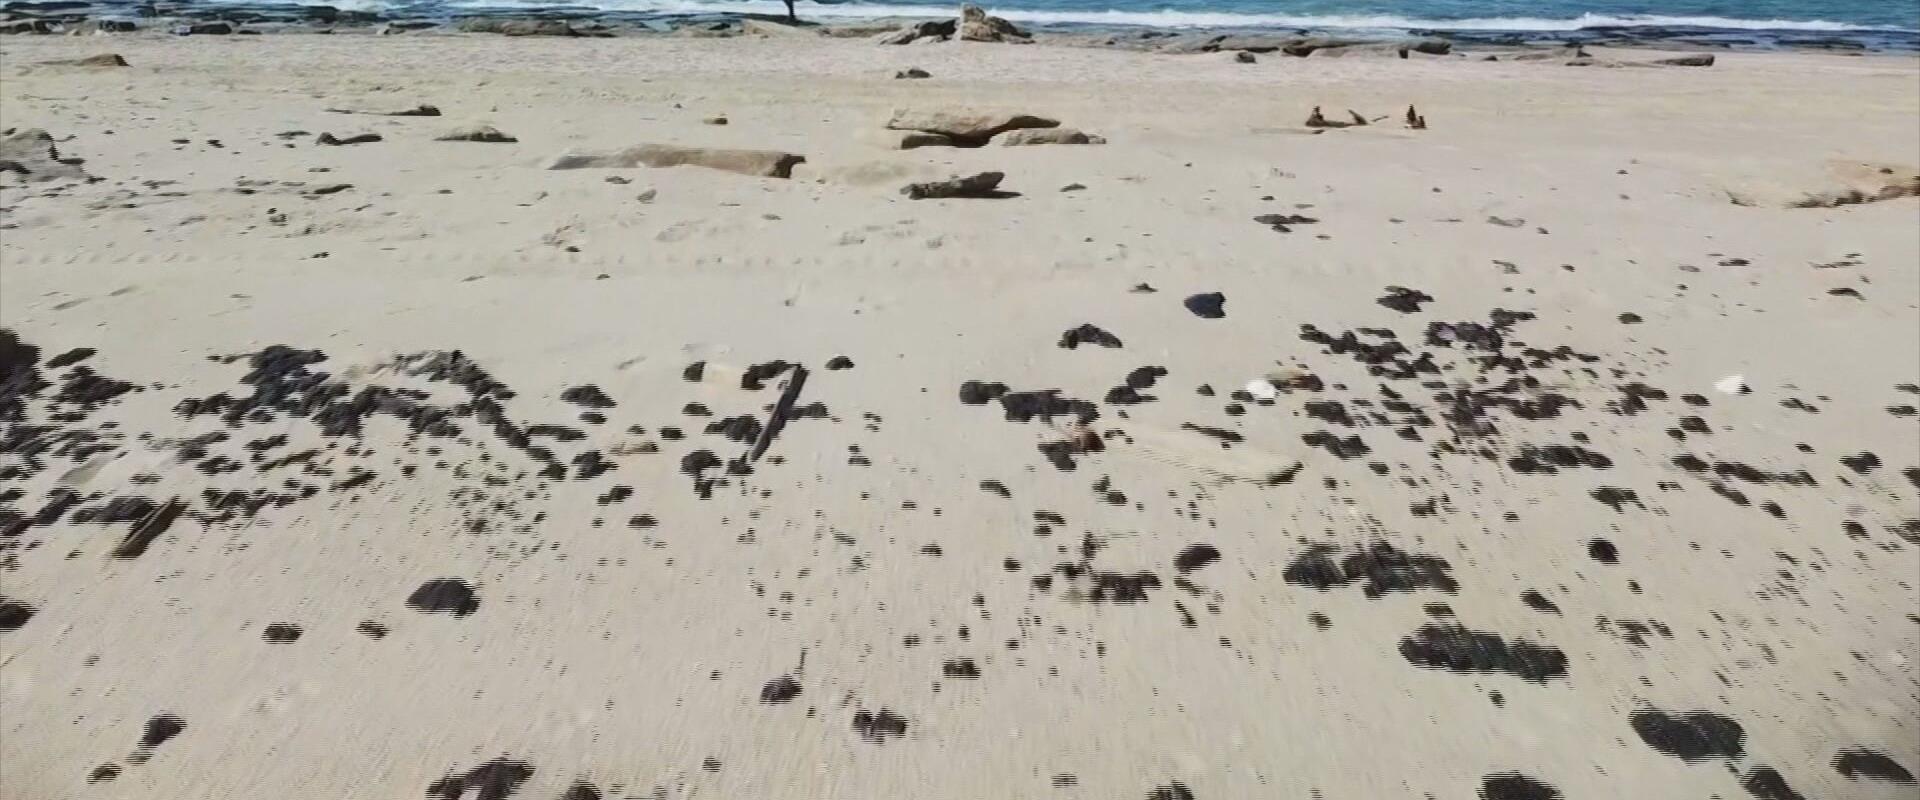 ניקוי חופים בעקבות אסון זיהום הנפט